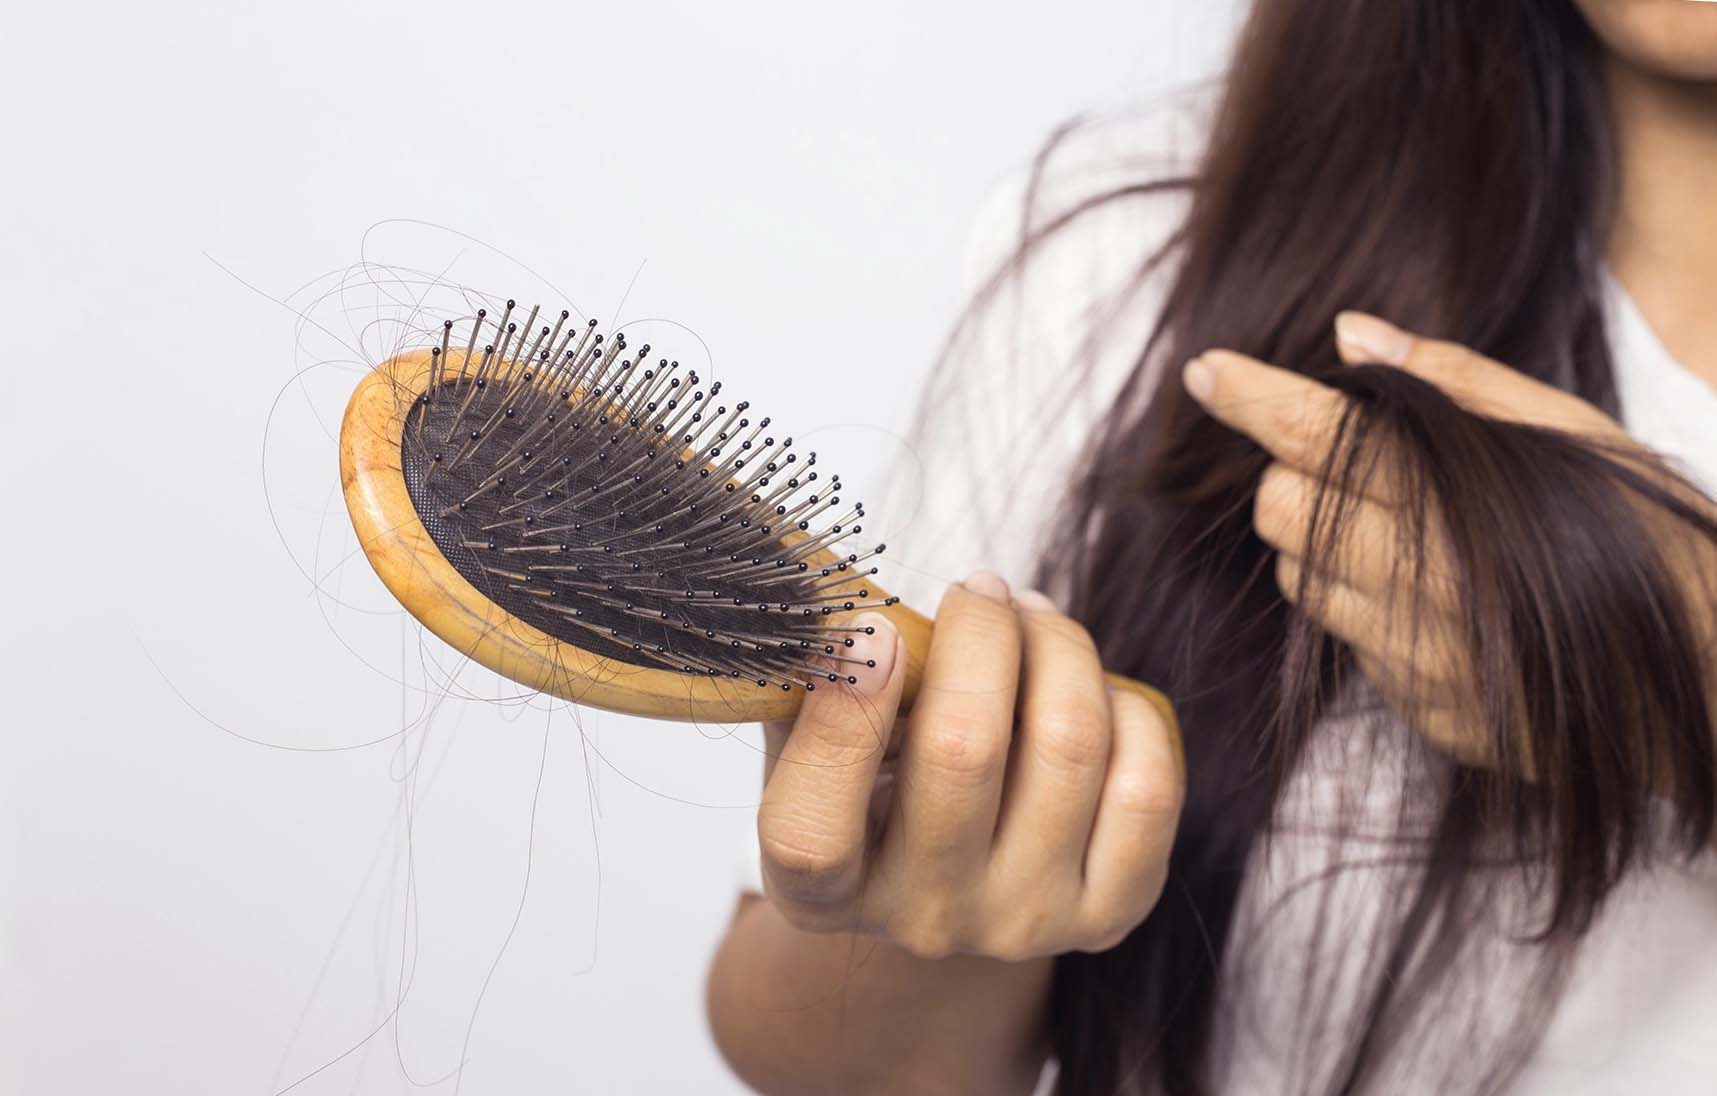 Анализы при выпадении волос